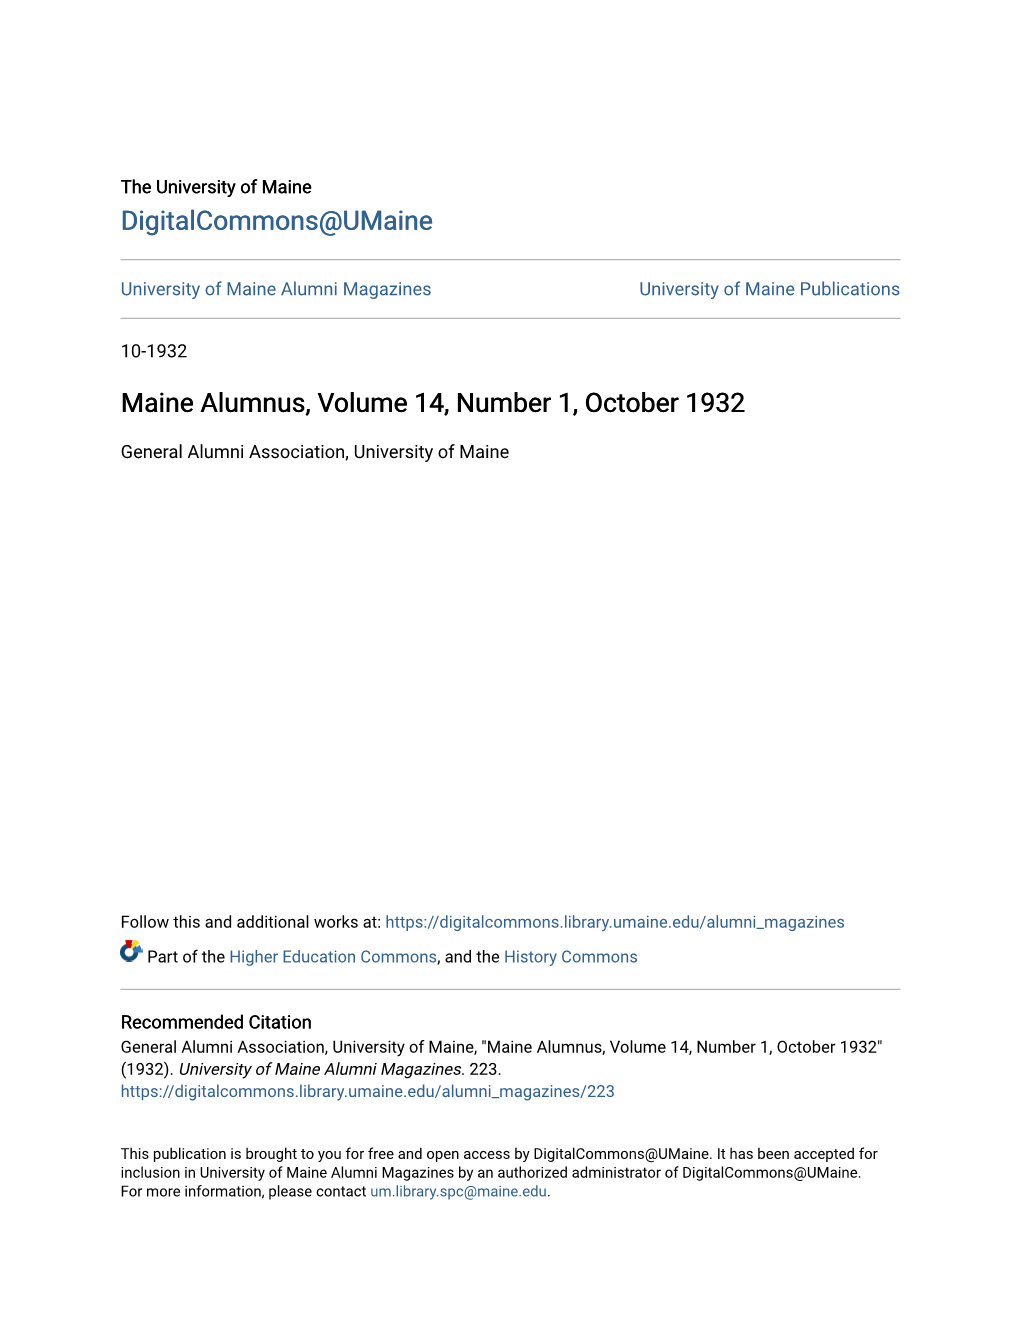 Maine Alumnus, Volume 14, Number 1, October 1932